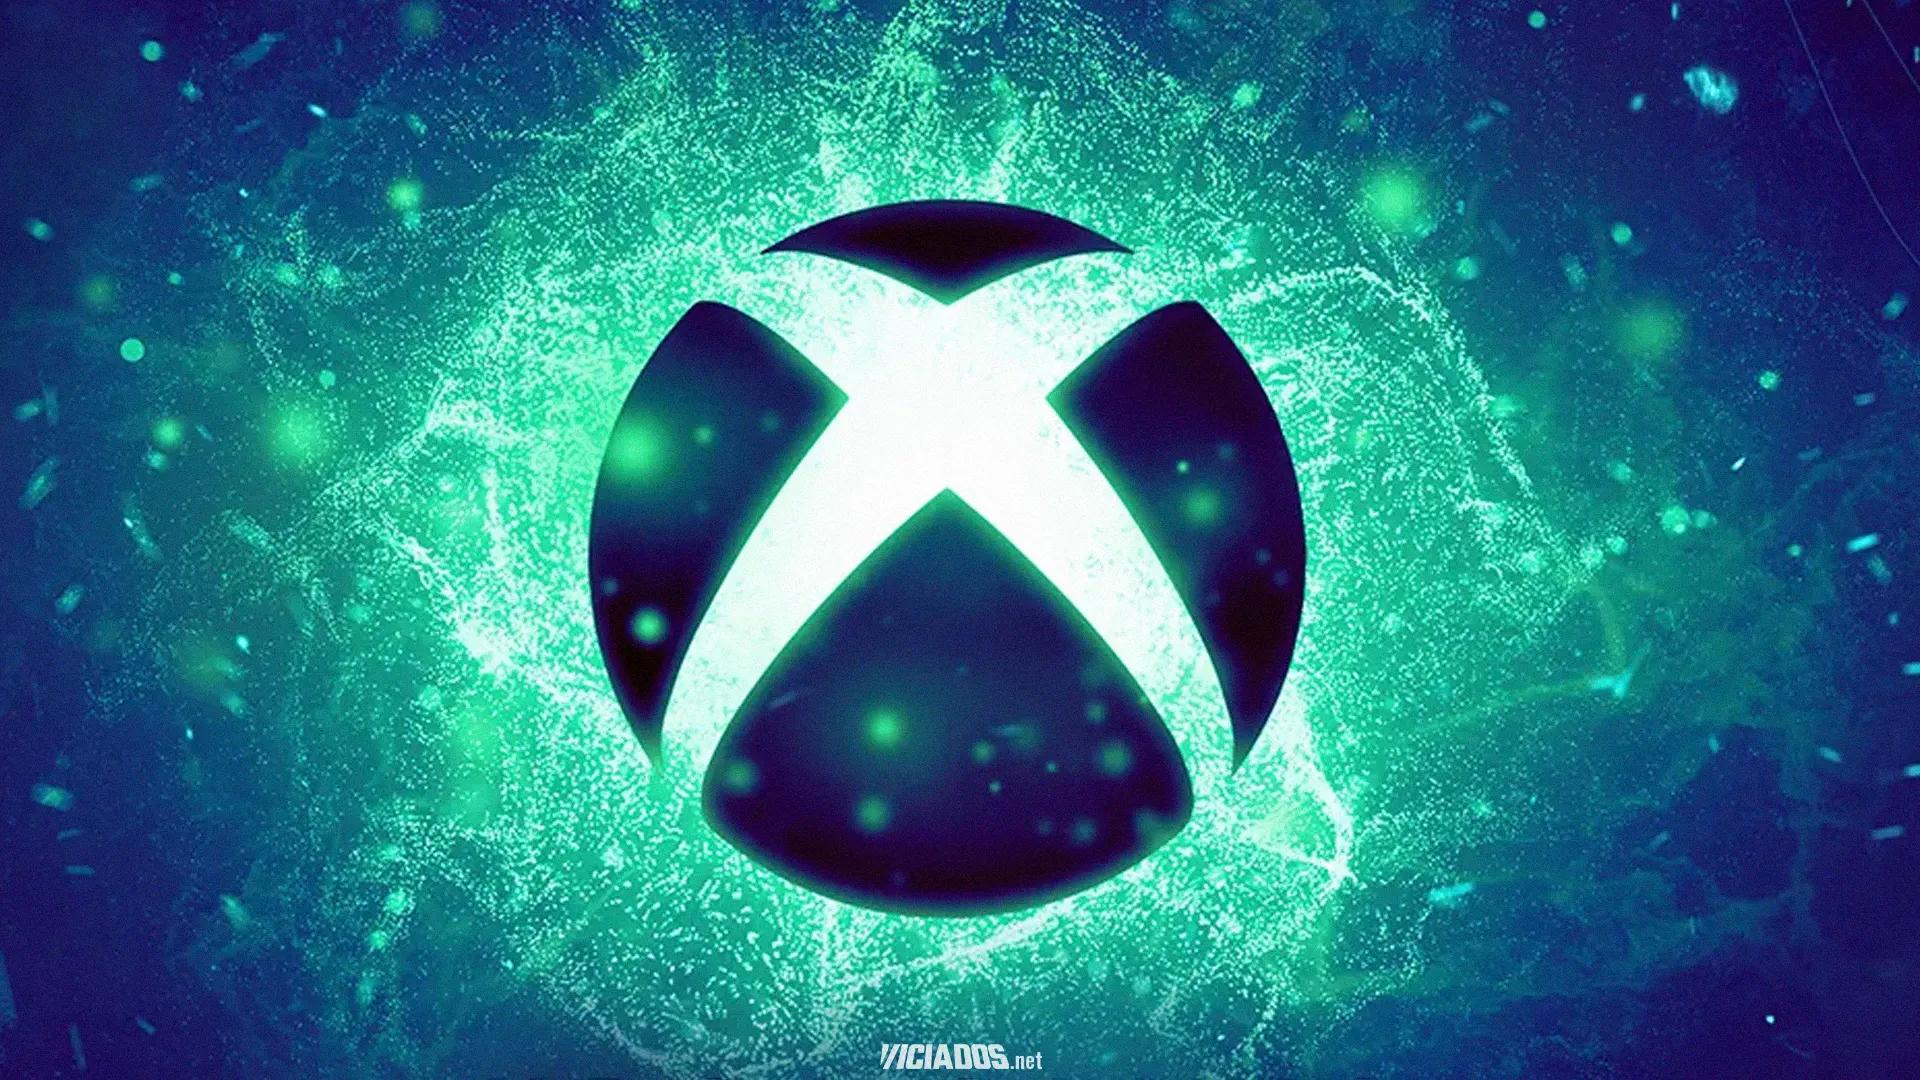 Xbox | Usuários do console já podem experimentar a nova interface com estas novidades! 2023 Viciados